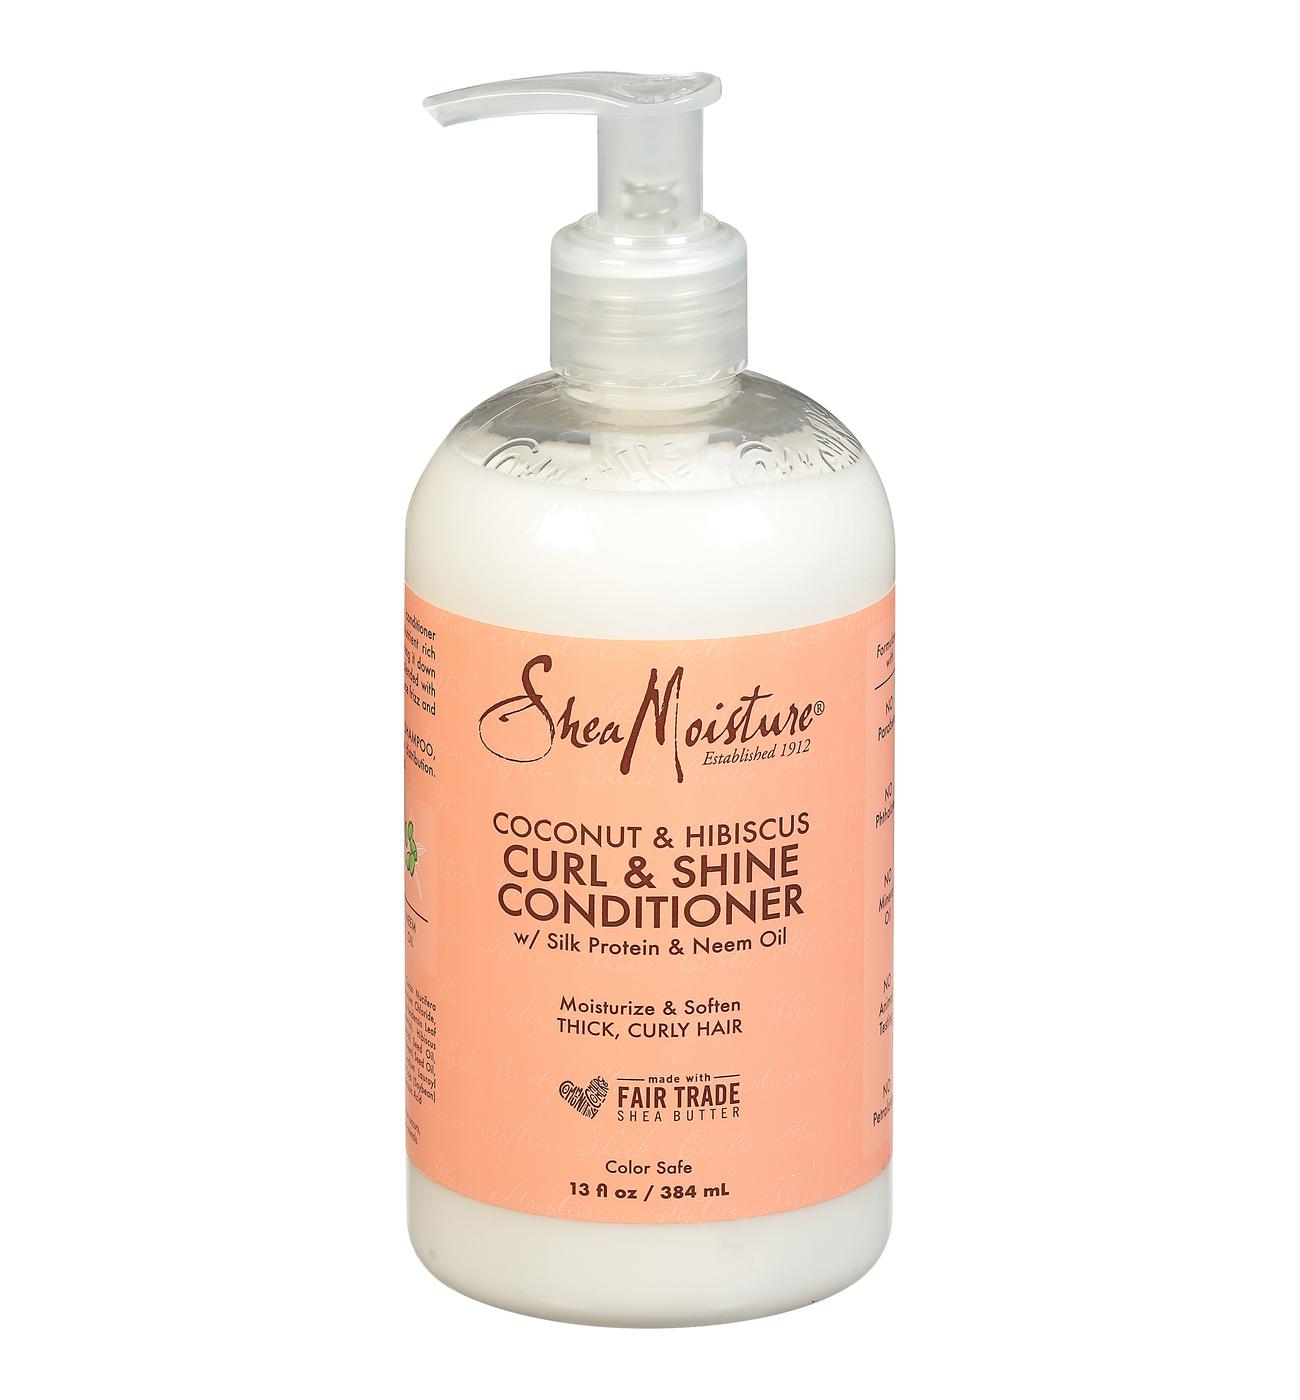 SheaMoisture Coconut & Hibiscus Curl & Shine Conditioner - Shop Shampoo & at H-E-B